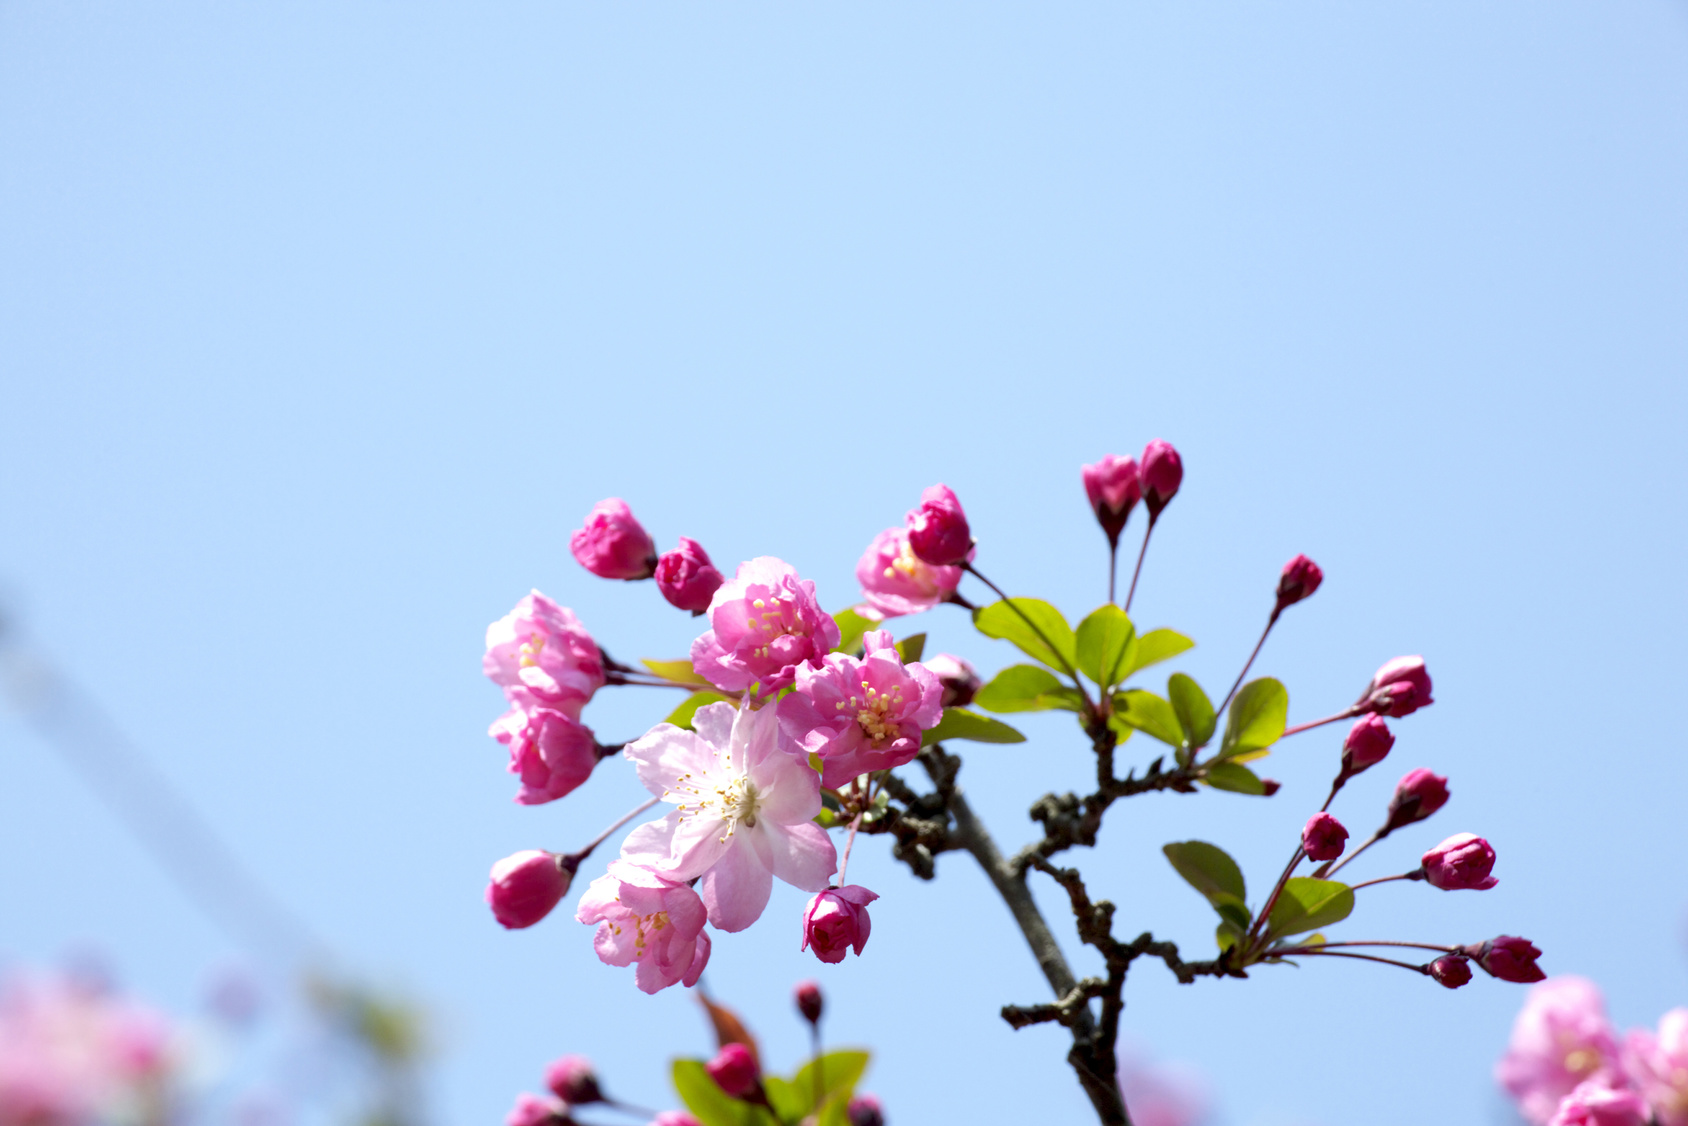 Tokyo☆春の庭園交流会（浜離宮恩賜庭園）